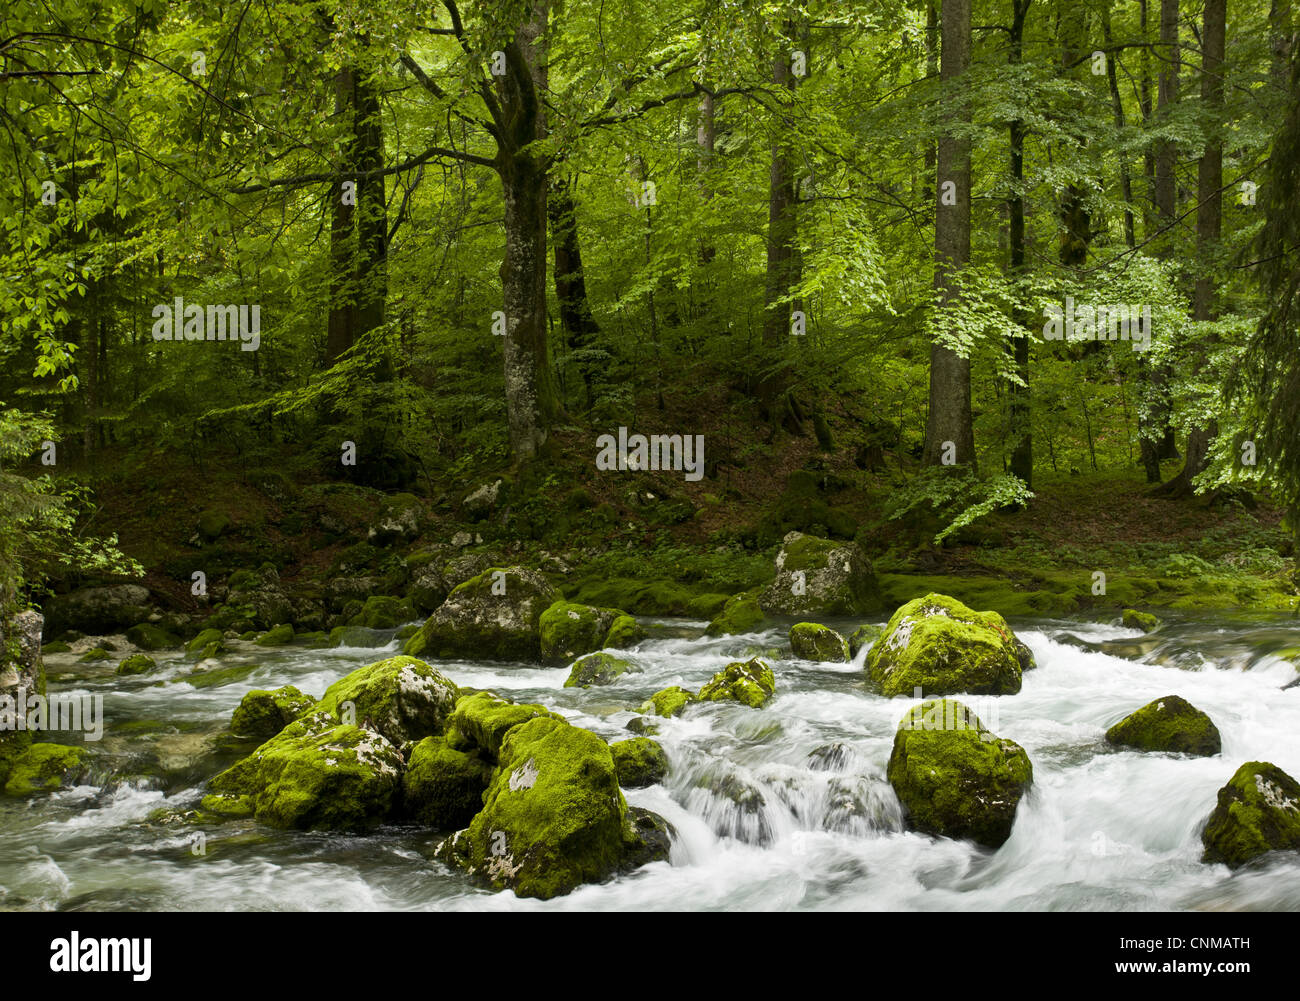 Le hêtre commun Fagus sylvatica rocky montane habitat boisé qui traverse la rivière Savica N.P Triglav Alpes Juliennes Slovénie Banque D'Images